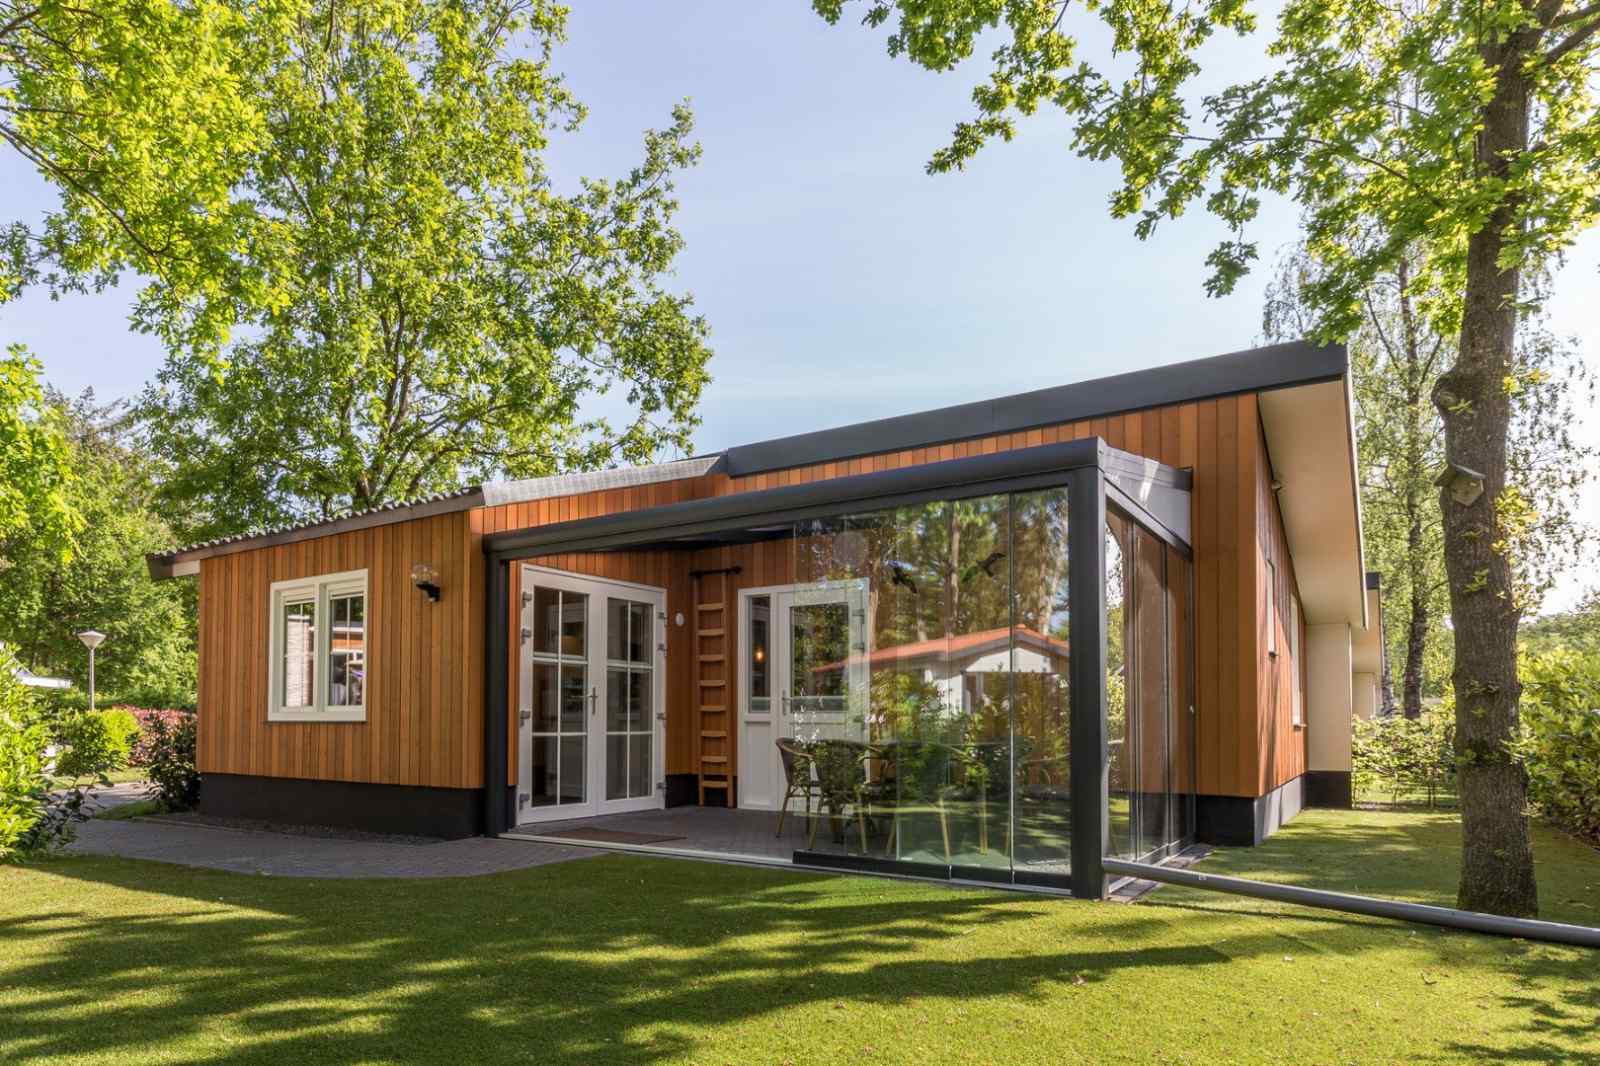 Prachtig 6 persoons vakantiehuis op familiepark nabij de Weerribben - Nederland - Europa - De Bult